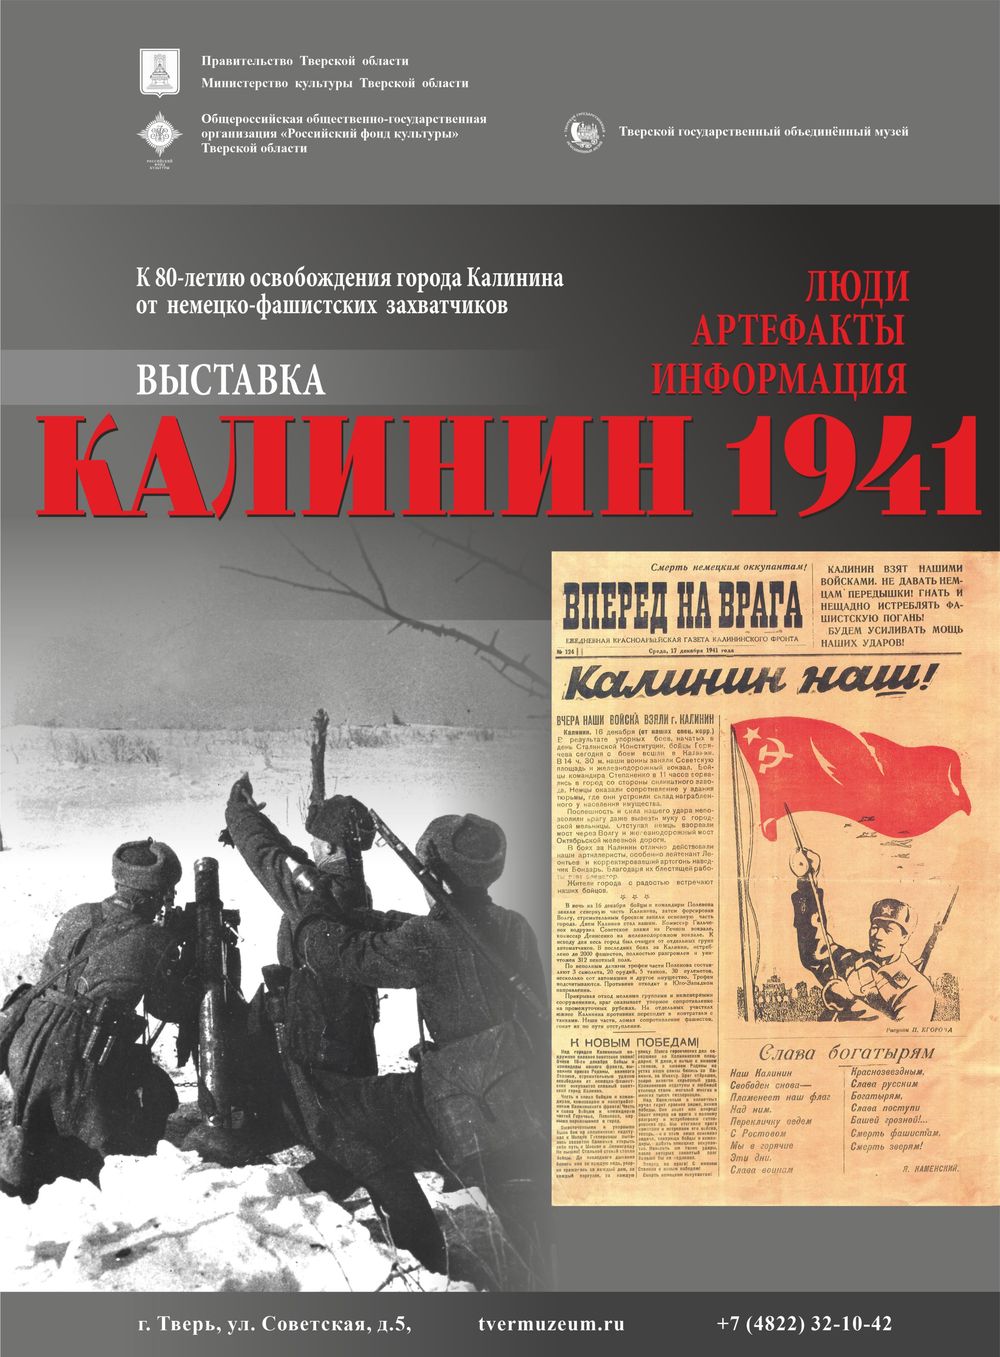 В Твери открывается выставка «Калинин 1941 года: люди, артефакты, информация»